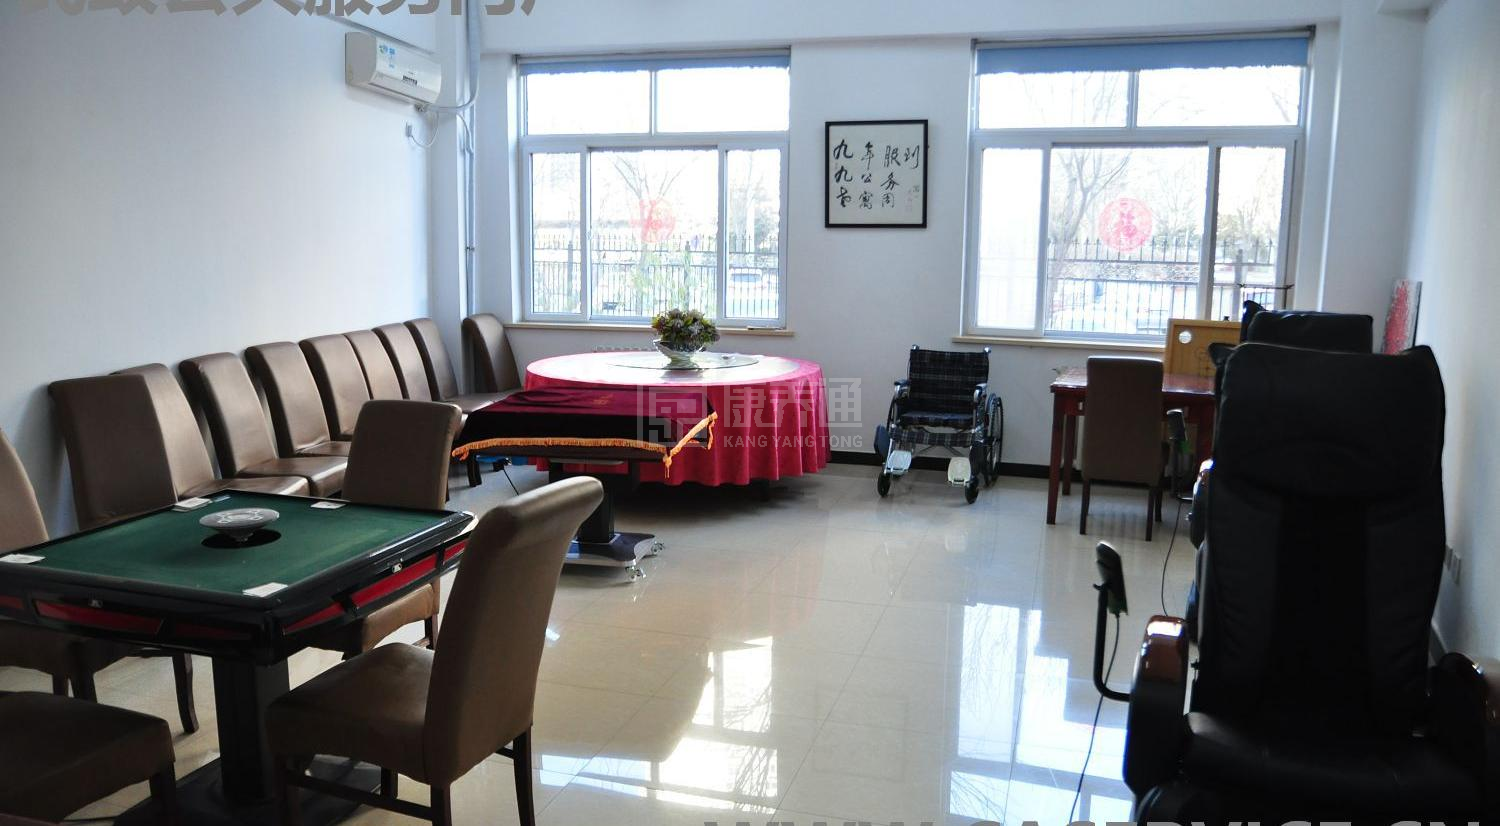 北京市朝阳区九九老年公寓服务项目图3惬意的环境、感受岁月静好